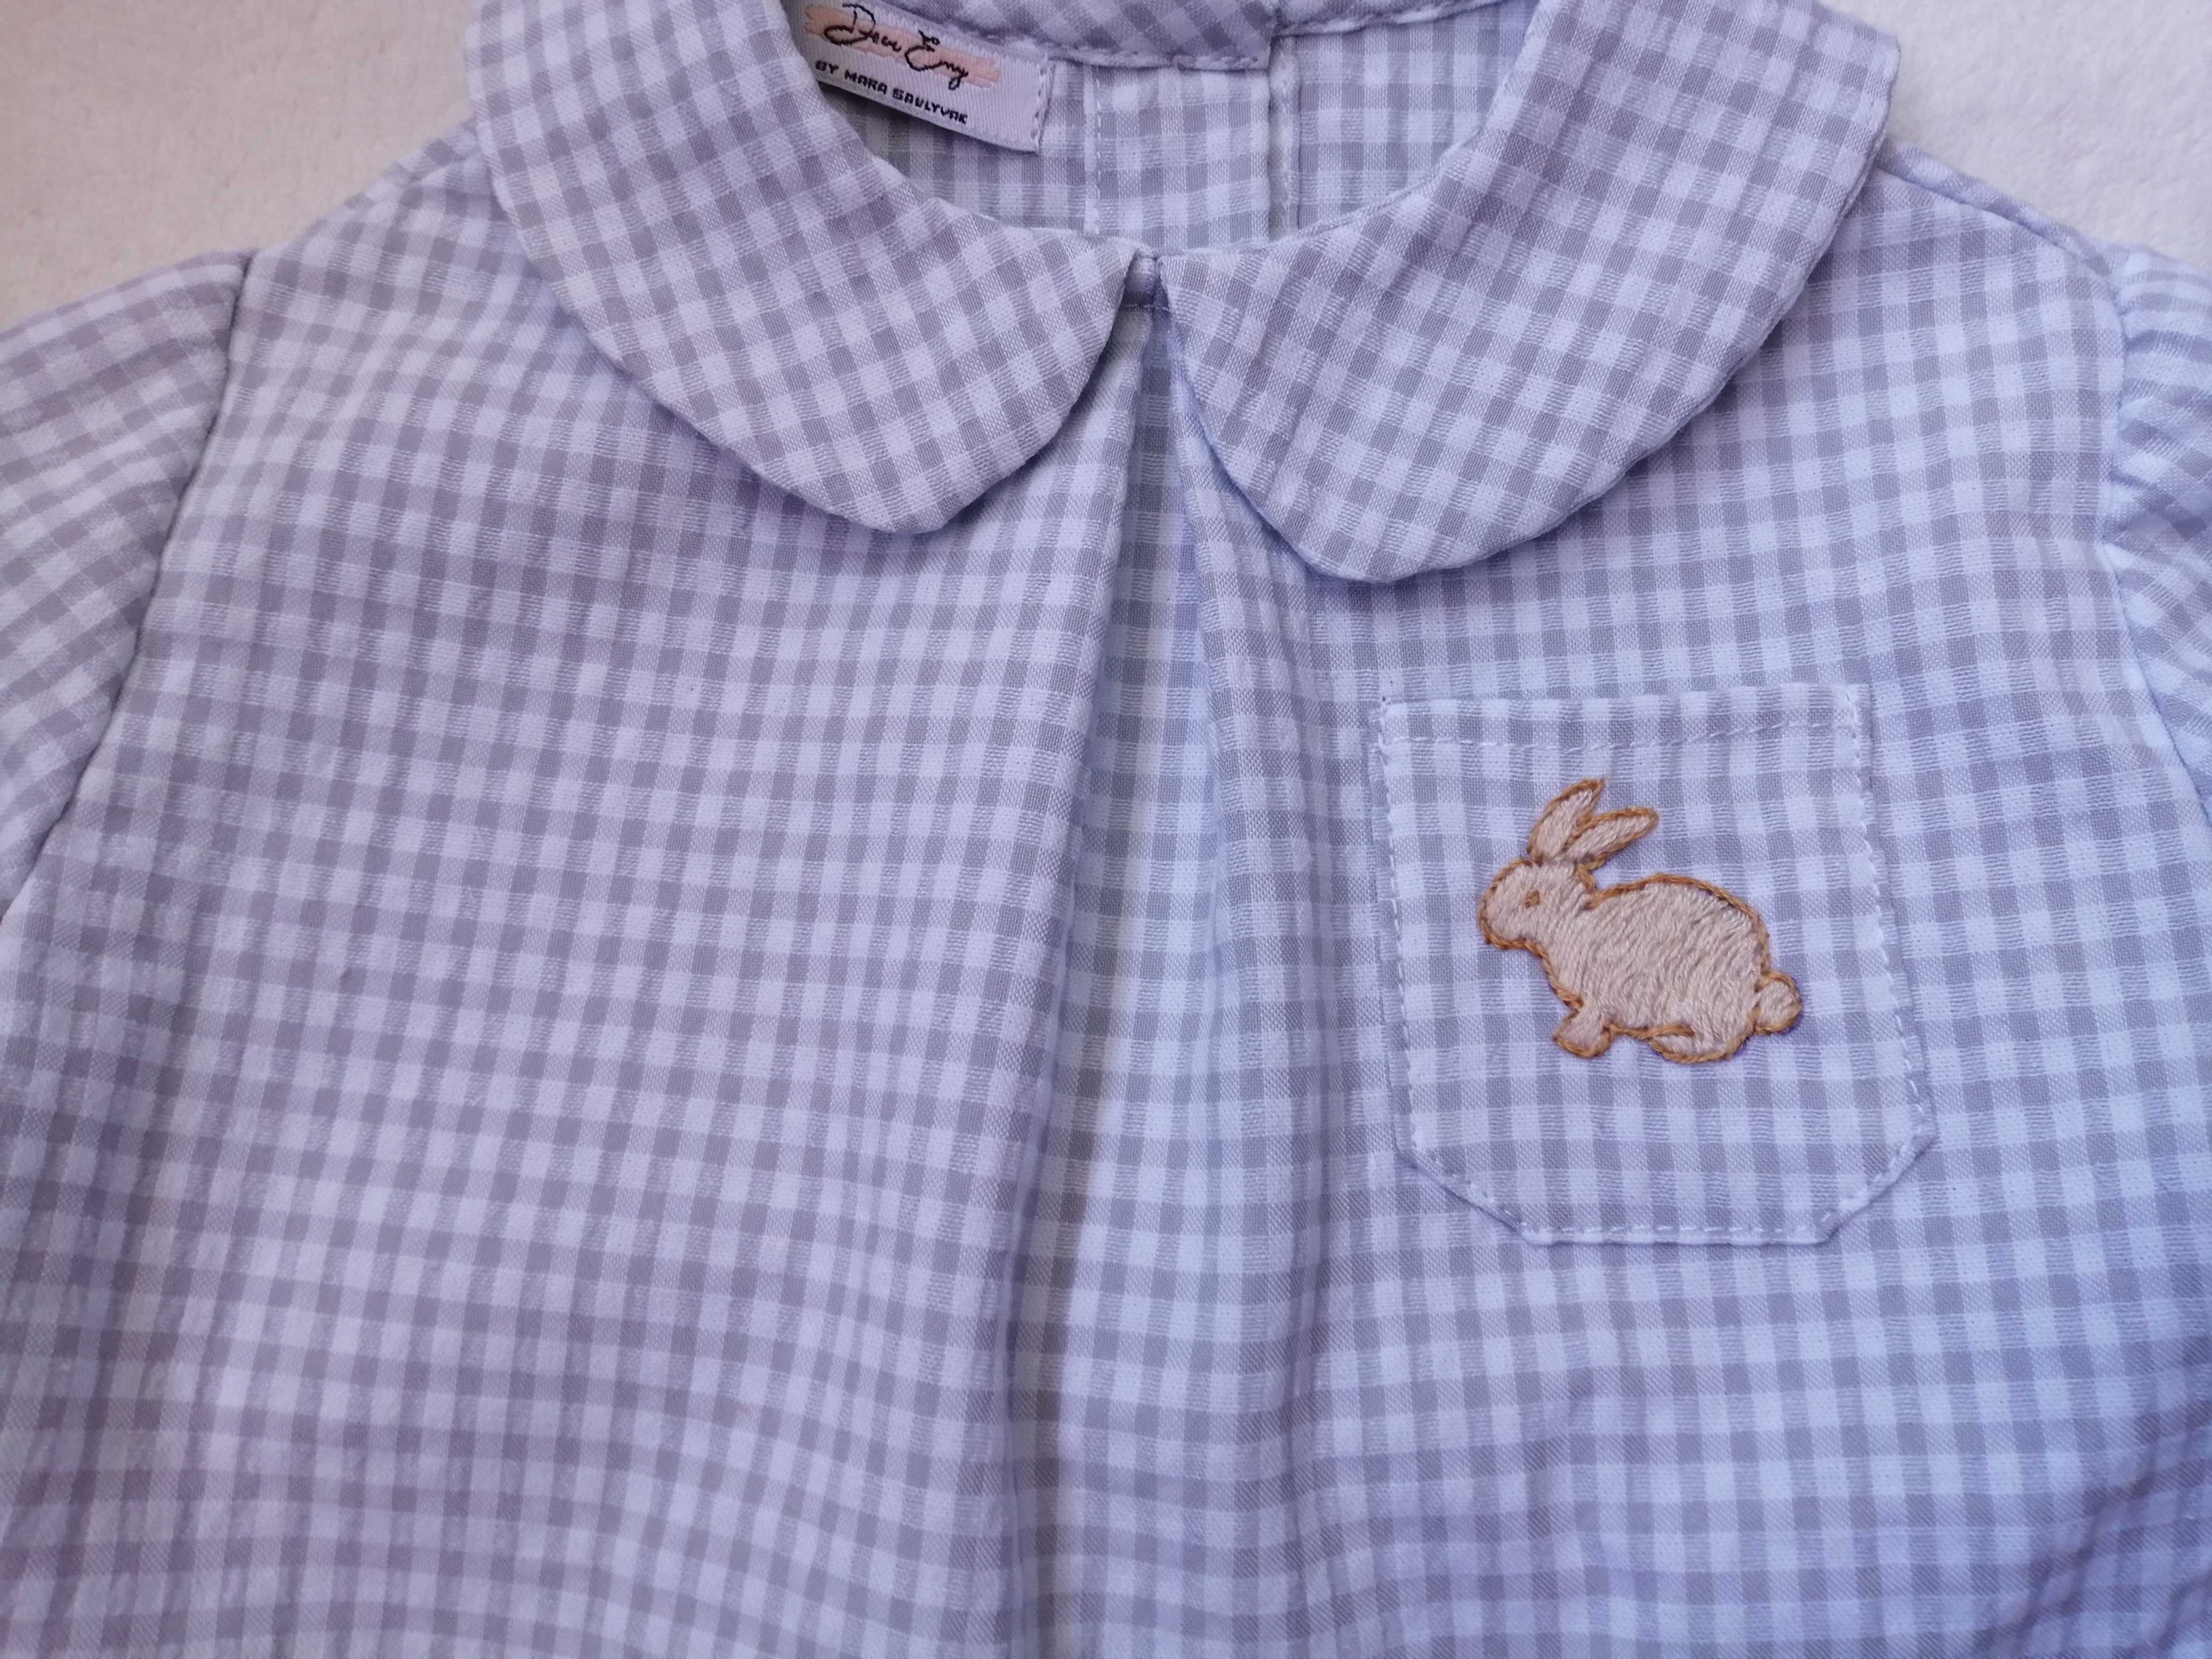 Blusa manga curta para bebé 3 meses com motivo bordado à mão